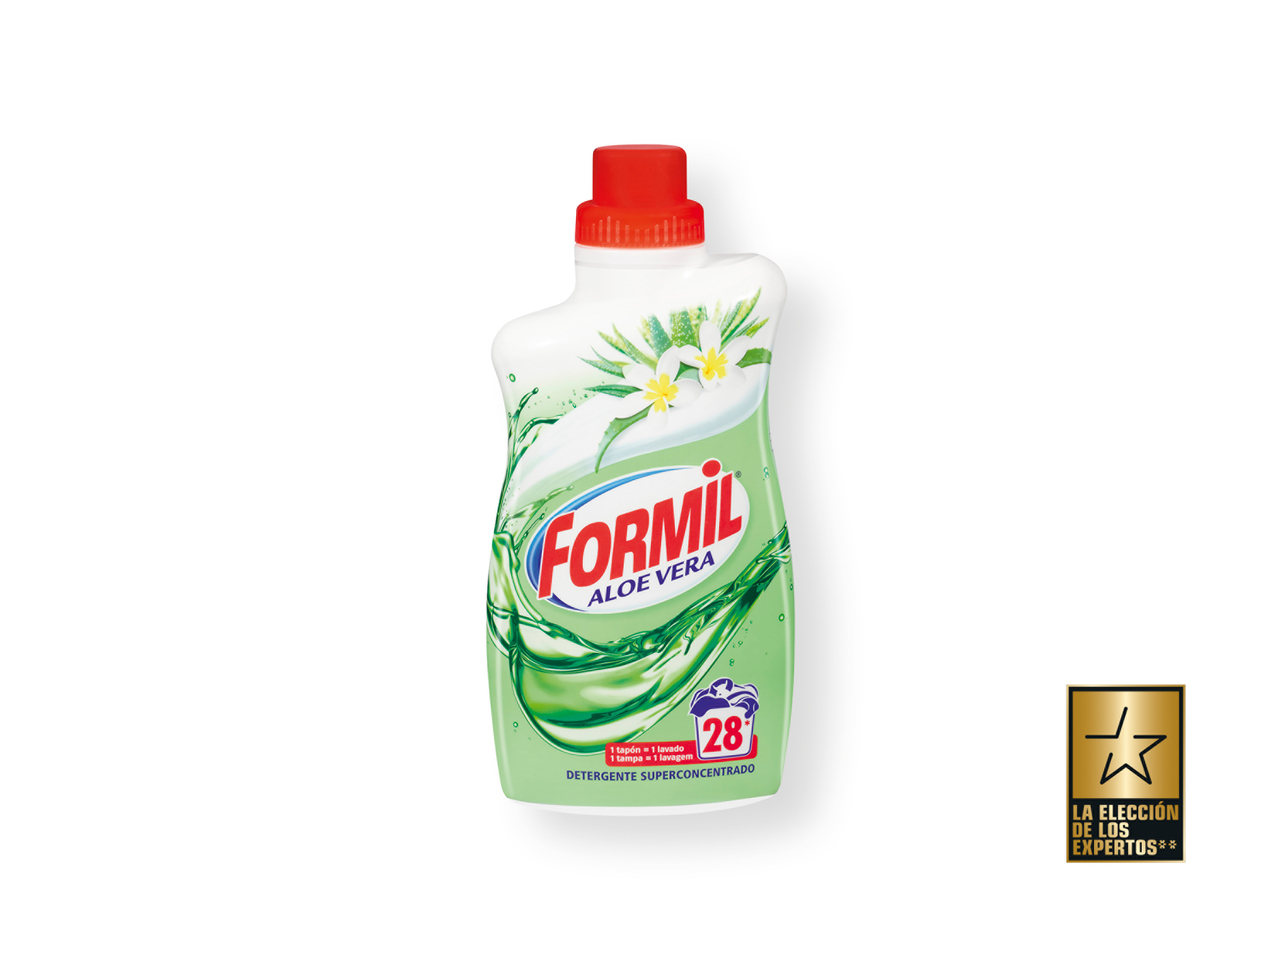 'Formil(R)' Detergente superconcentrado